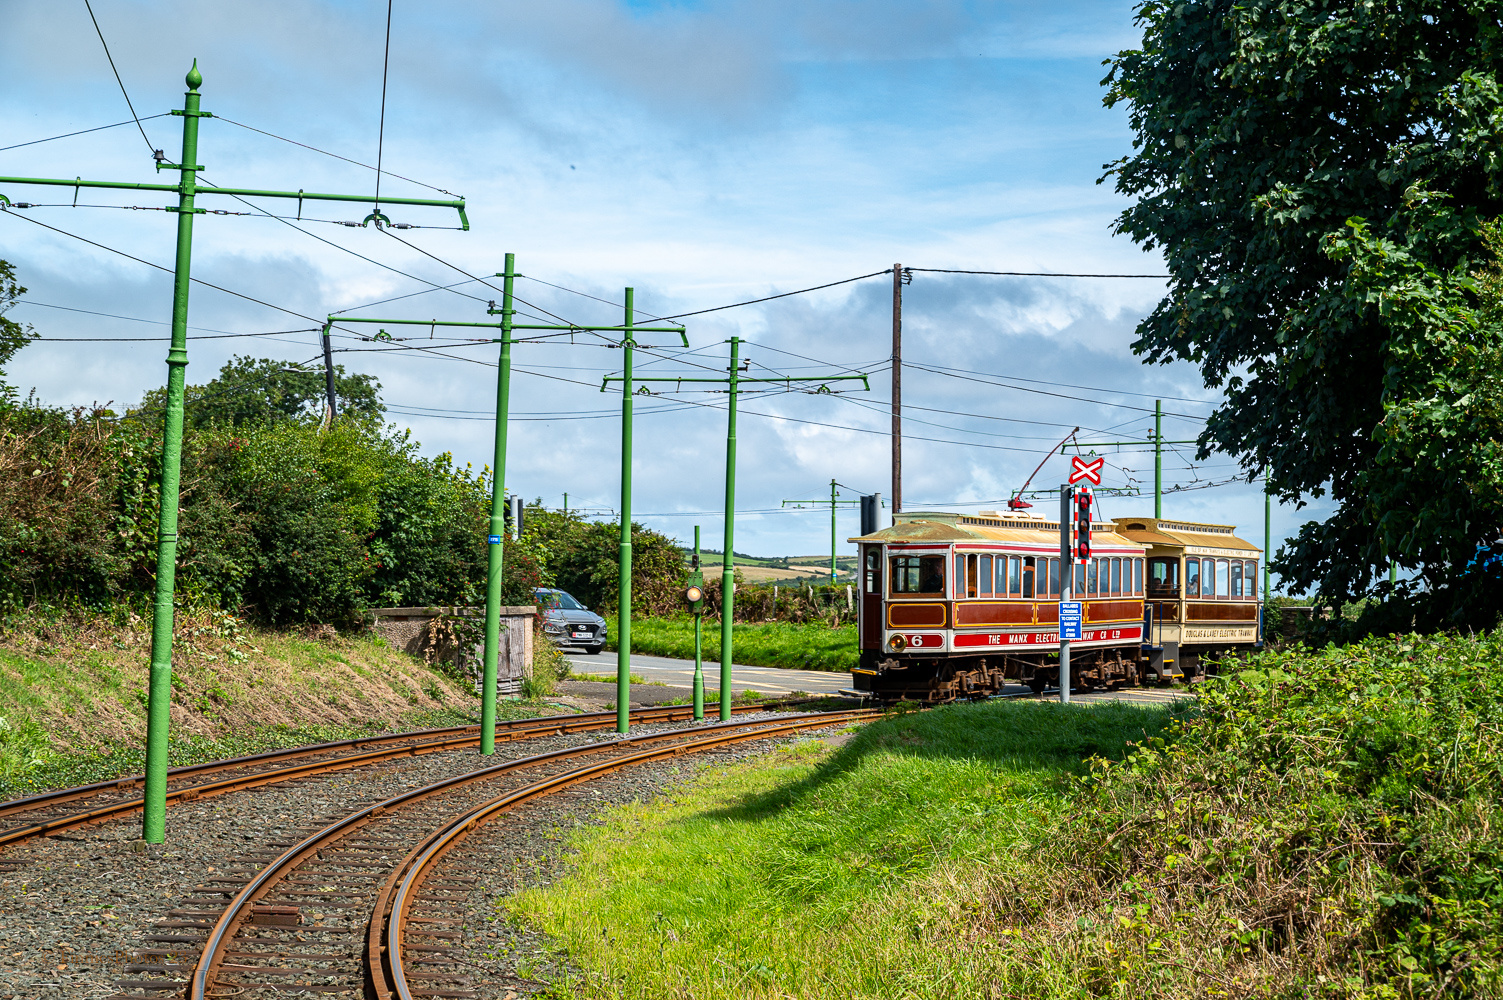 Isle of Man electric railway